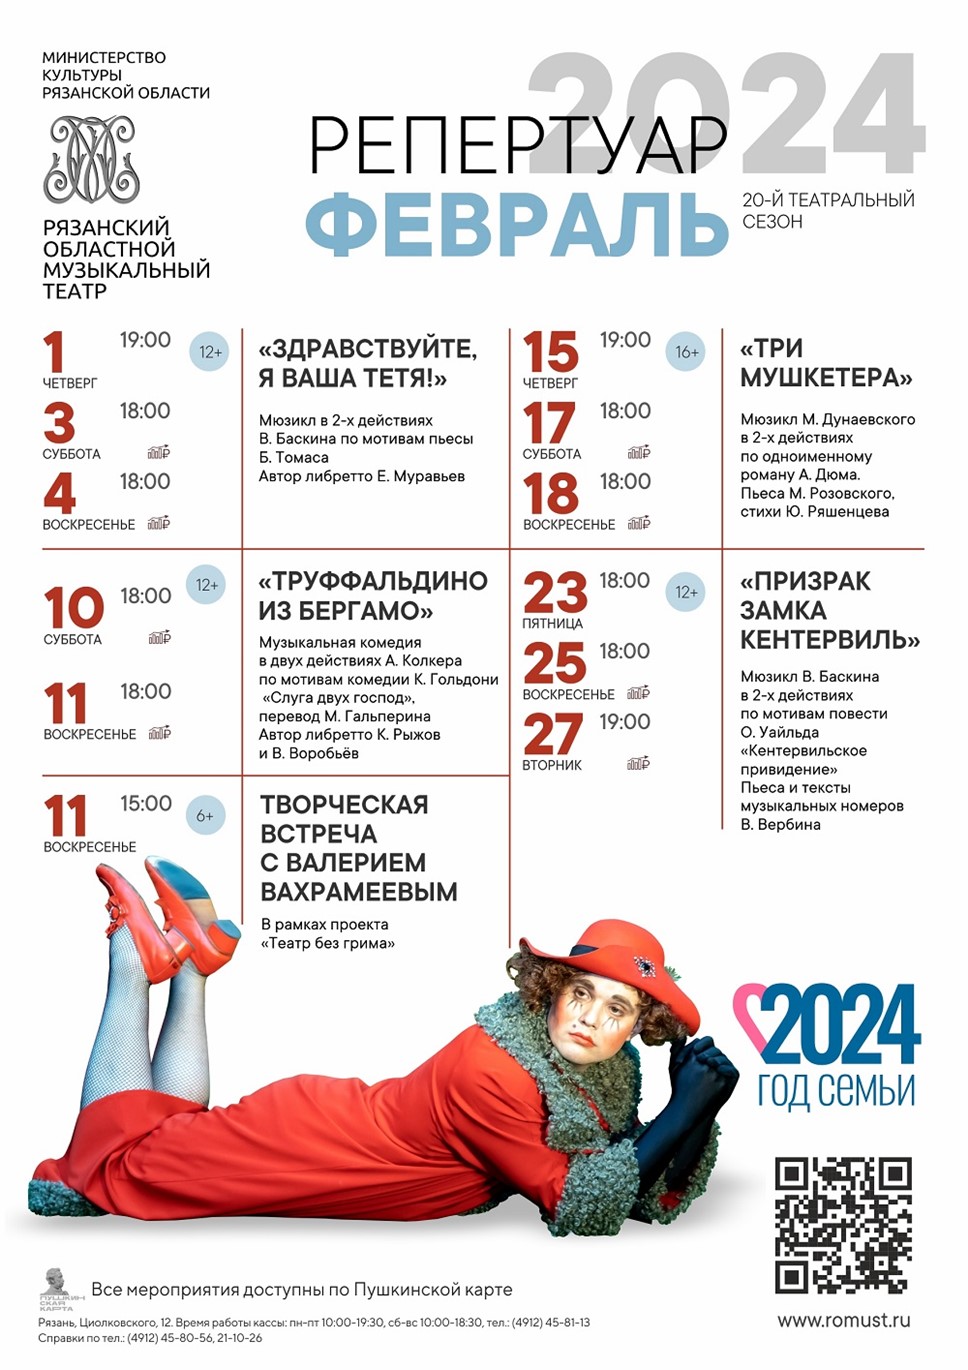 Рязанский музыкальный театр. Репертуар на февраль 2024 года.